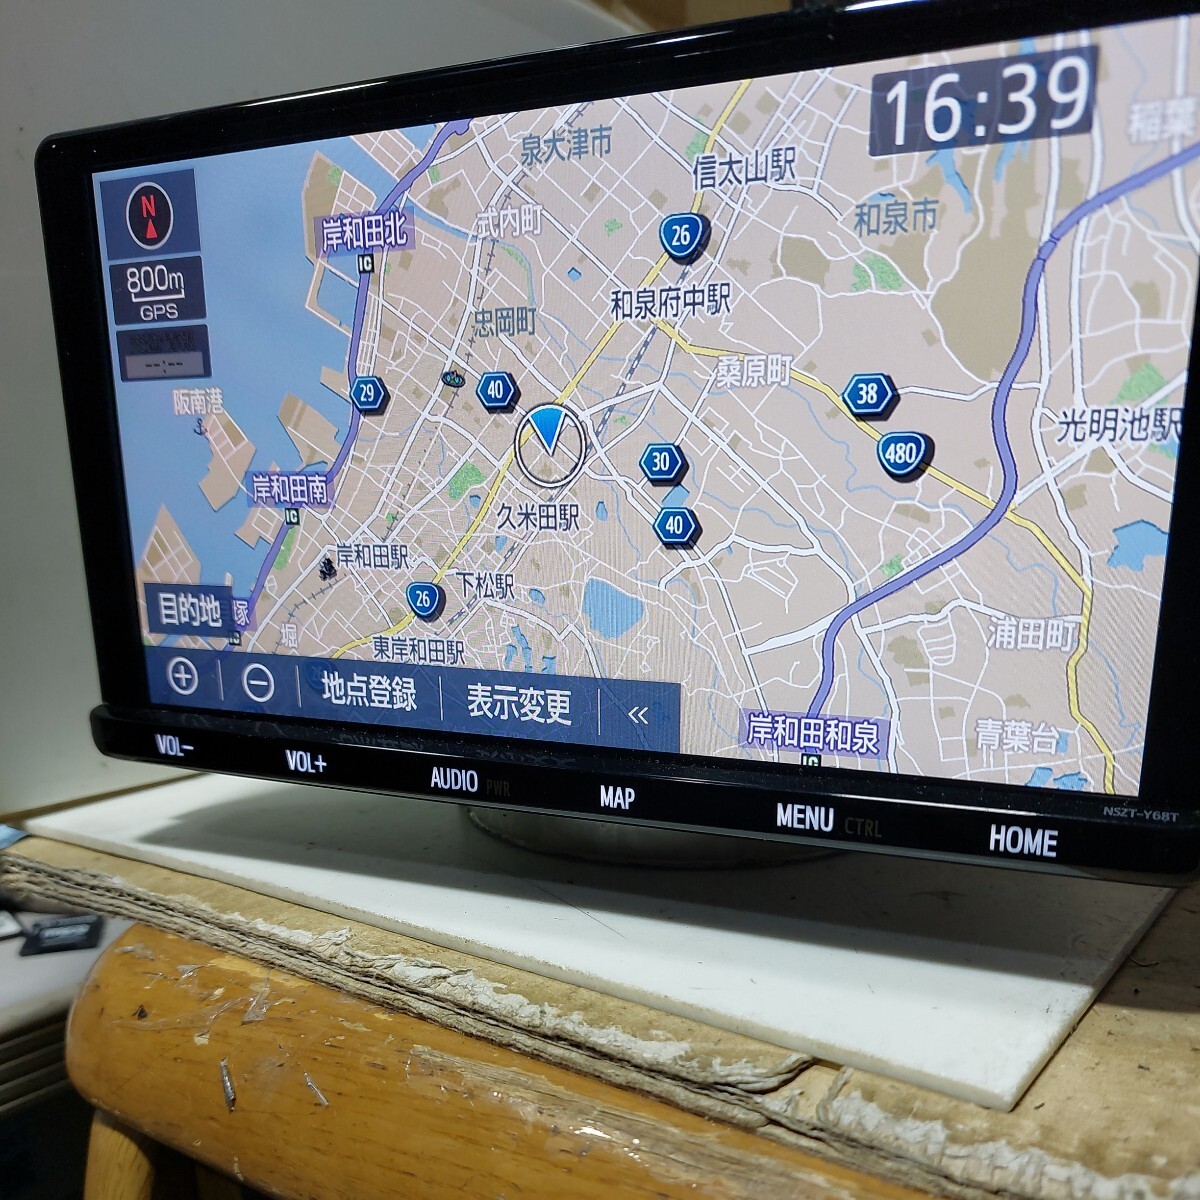 トヨタ NSZT-Y68T 2022年度地図データ (管理番号: 23051835 ) の画像2